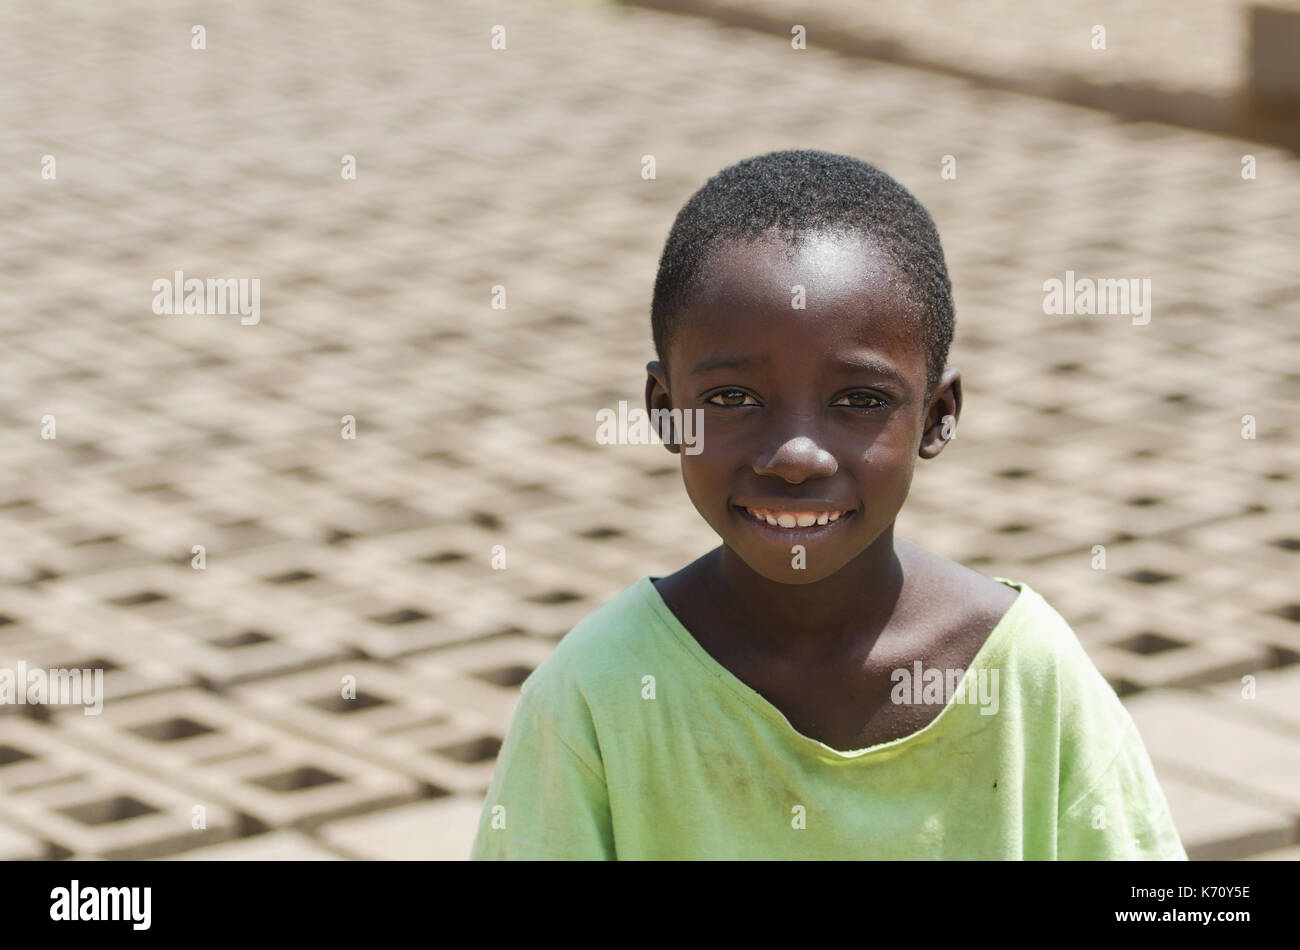 Kleines afrikanisches Kind lächelnd im Freien hinter Steine - Kinderarbeit Konzept Stockfoto